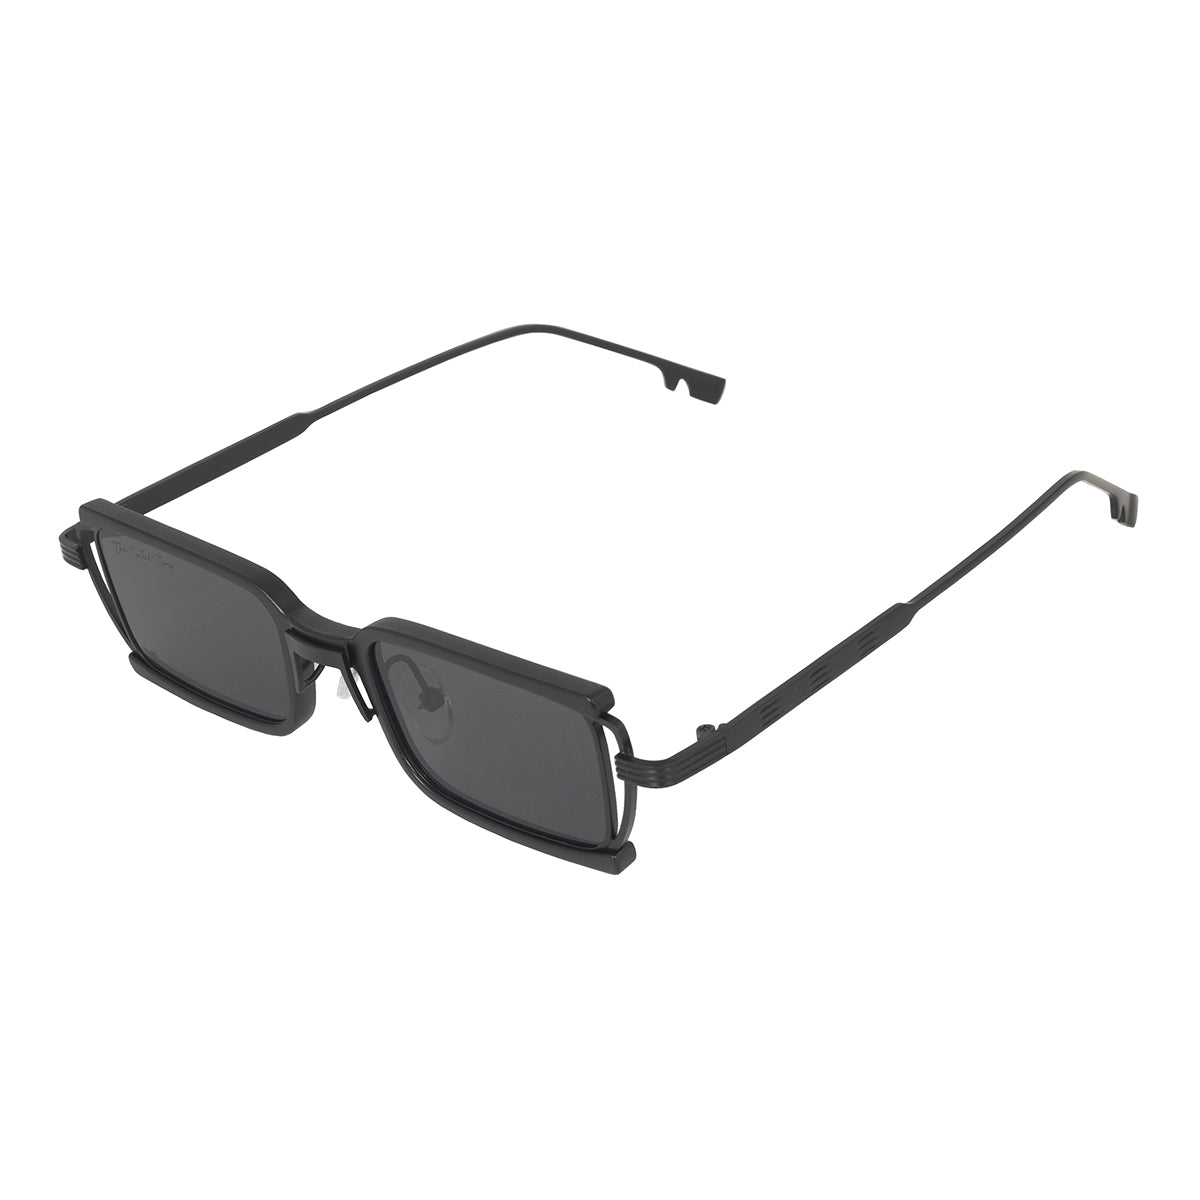 Merritt Street Sunglasses